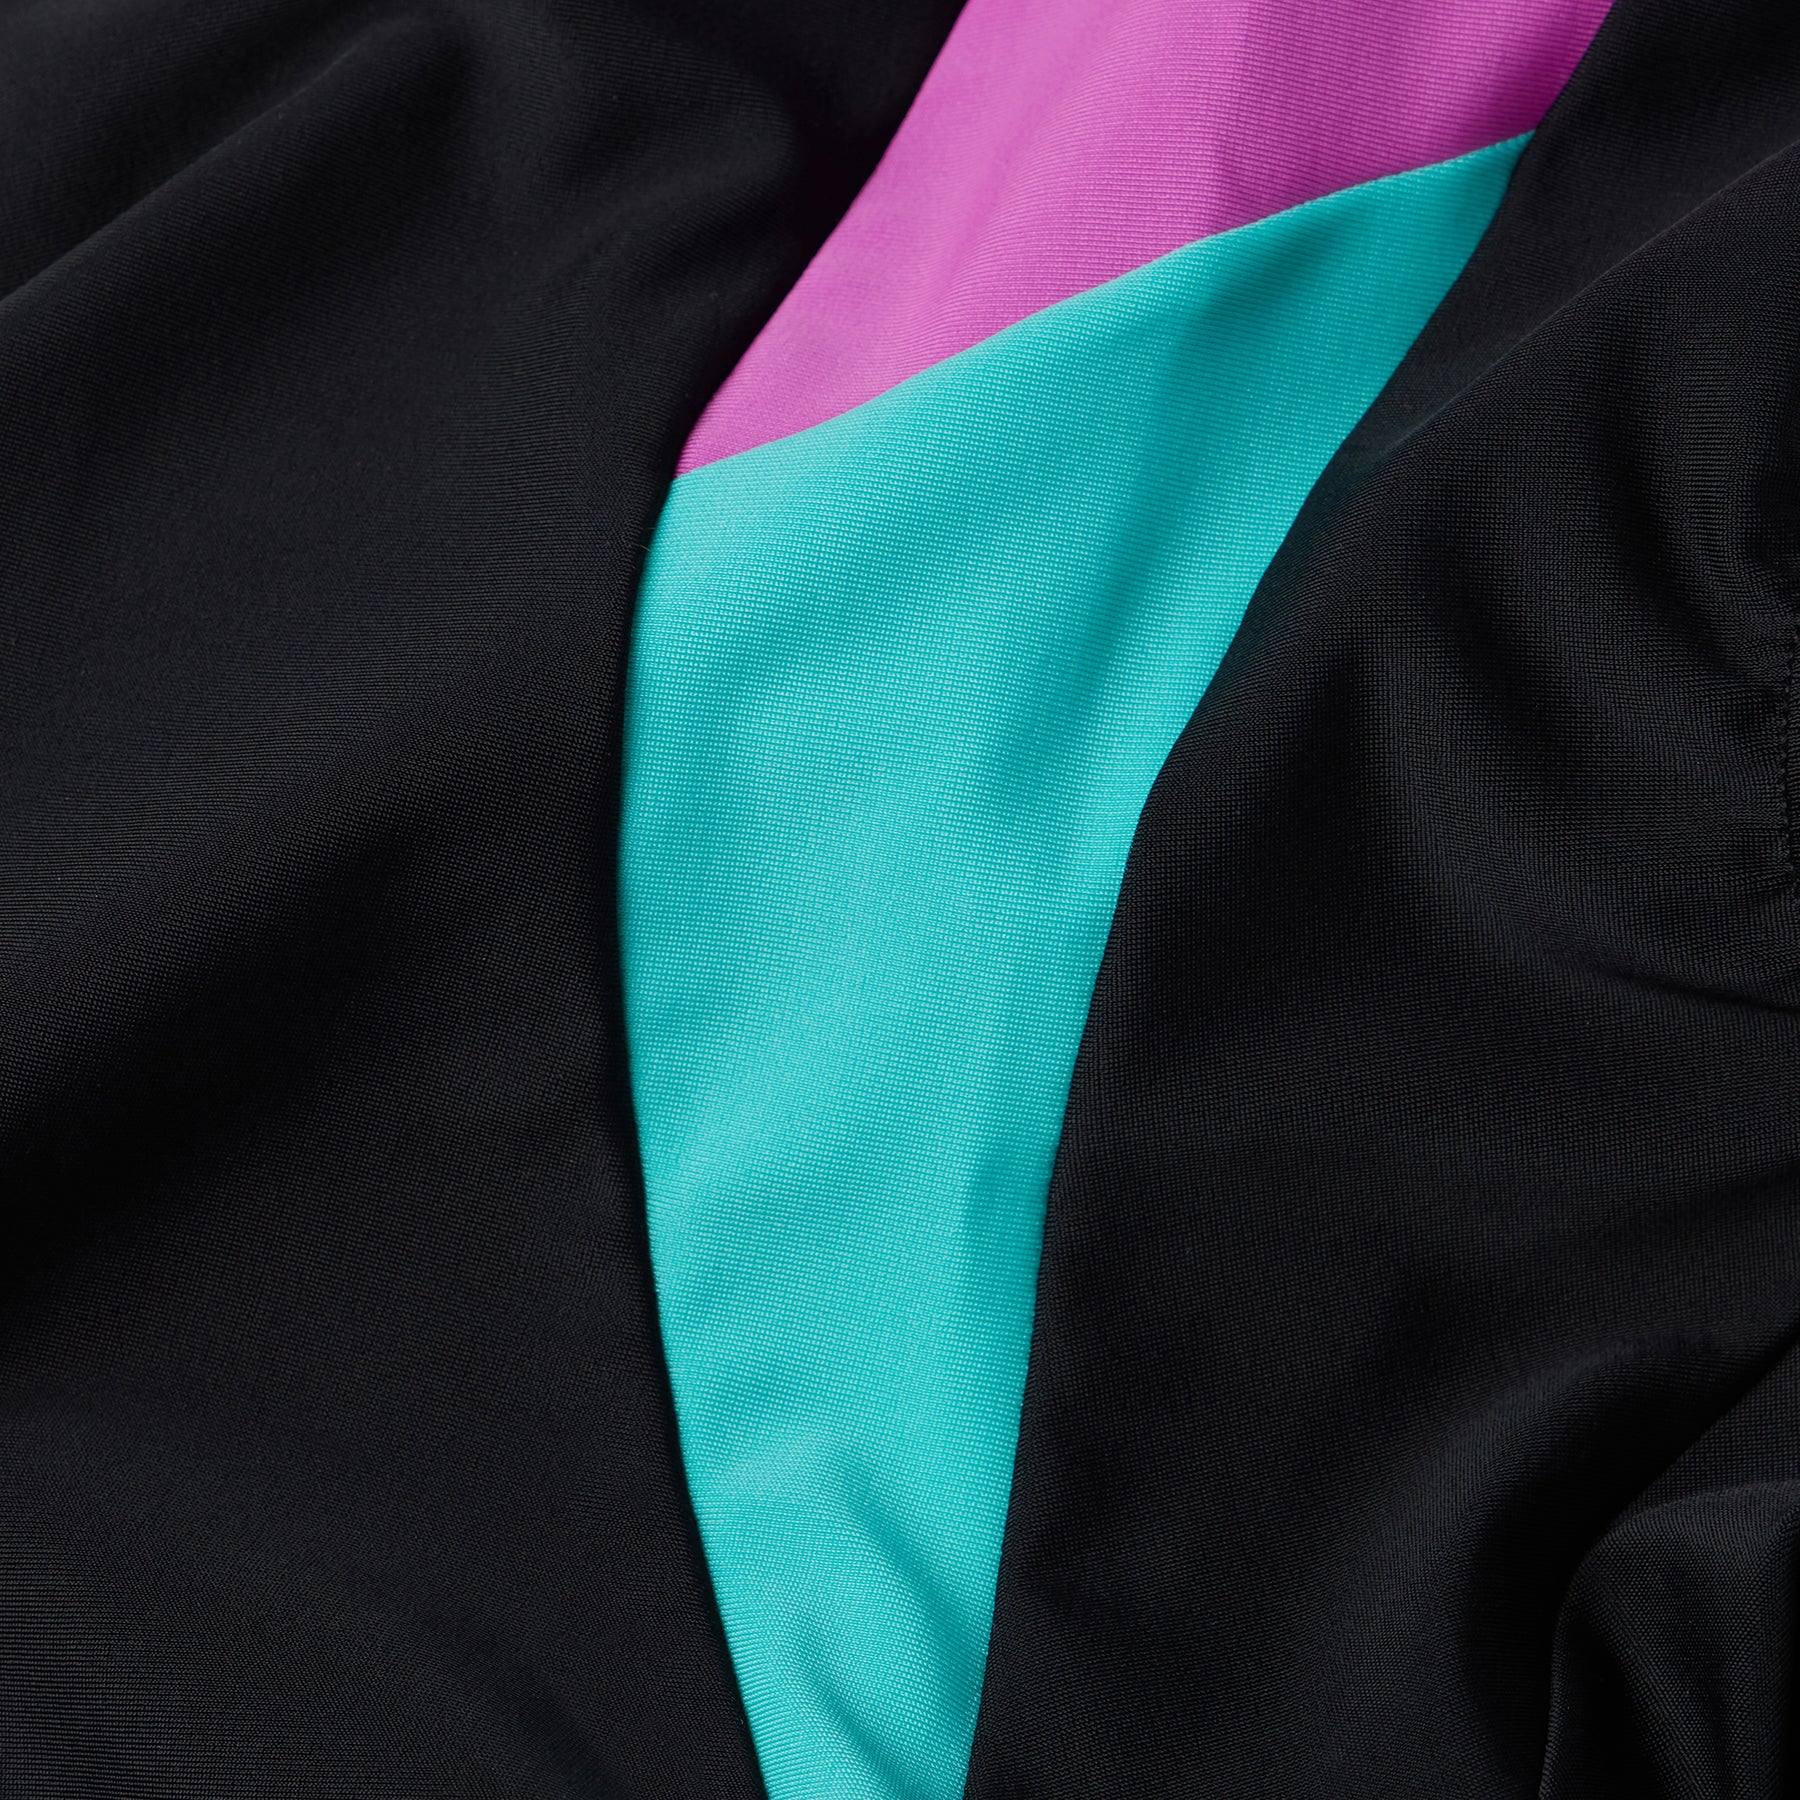 Speedo Women's Colourblock Splice Muscleback Swimsuit: Black/Blue